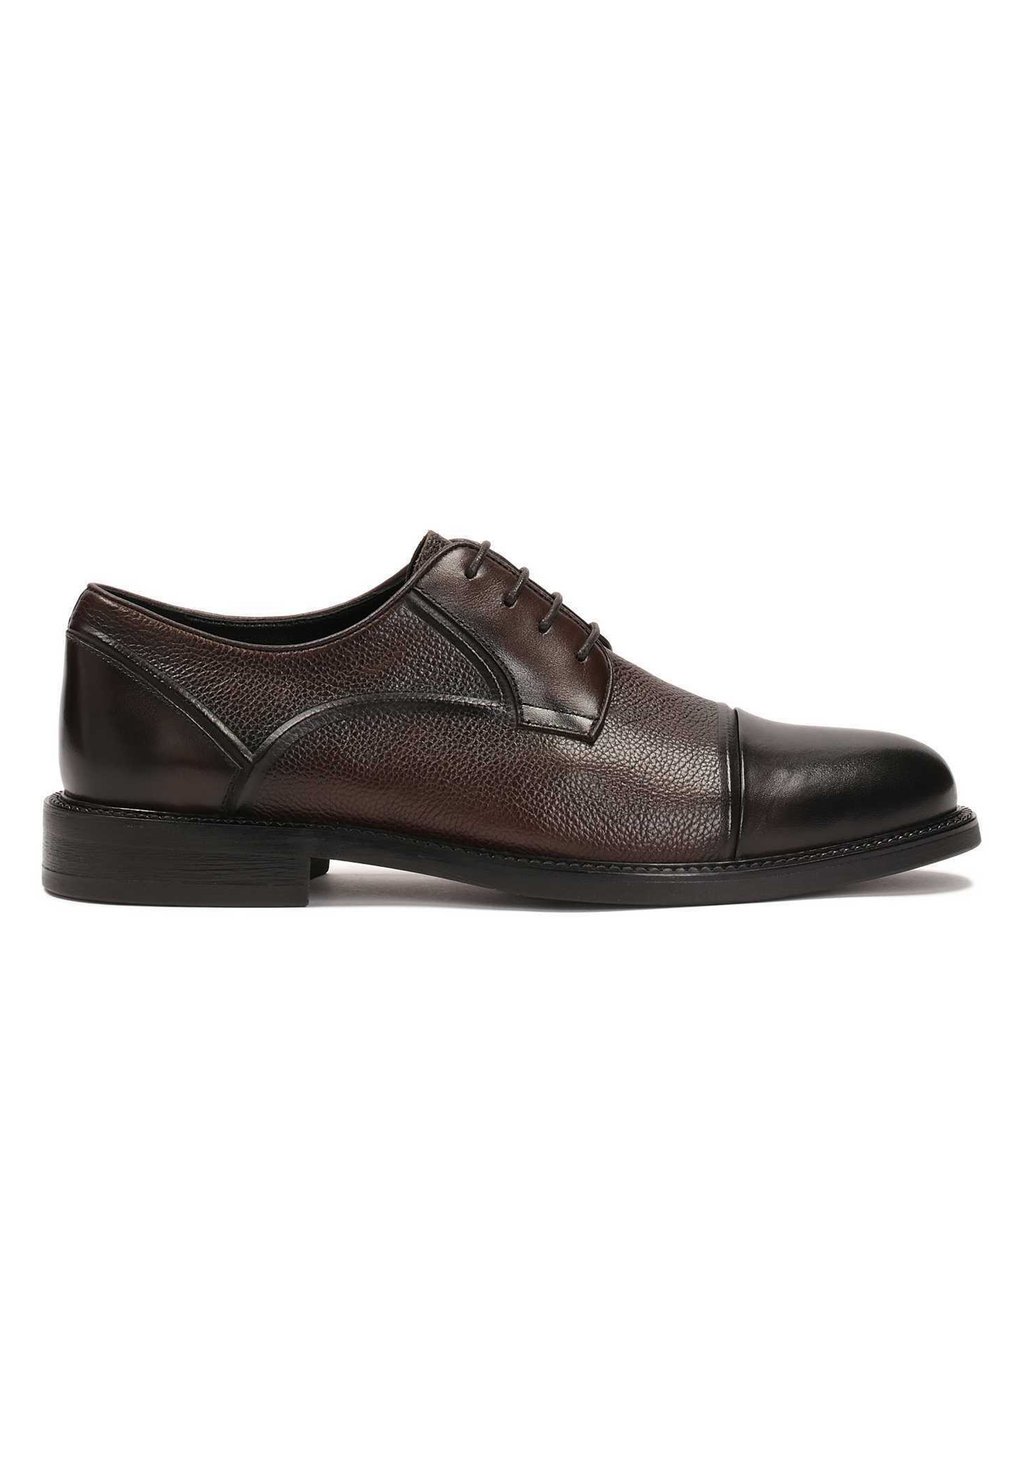 Элегантные туфли на шнуровке Kazar, коричневые